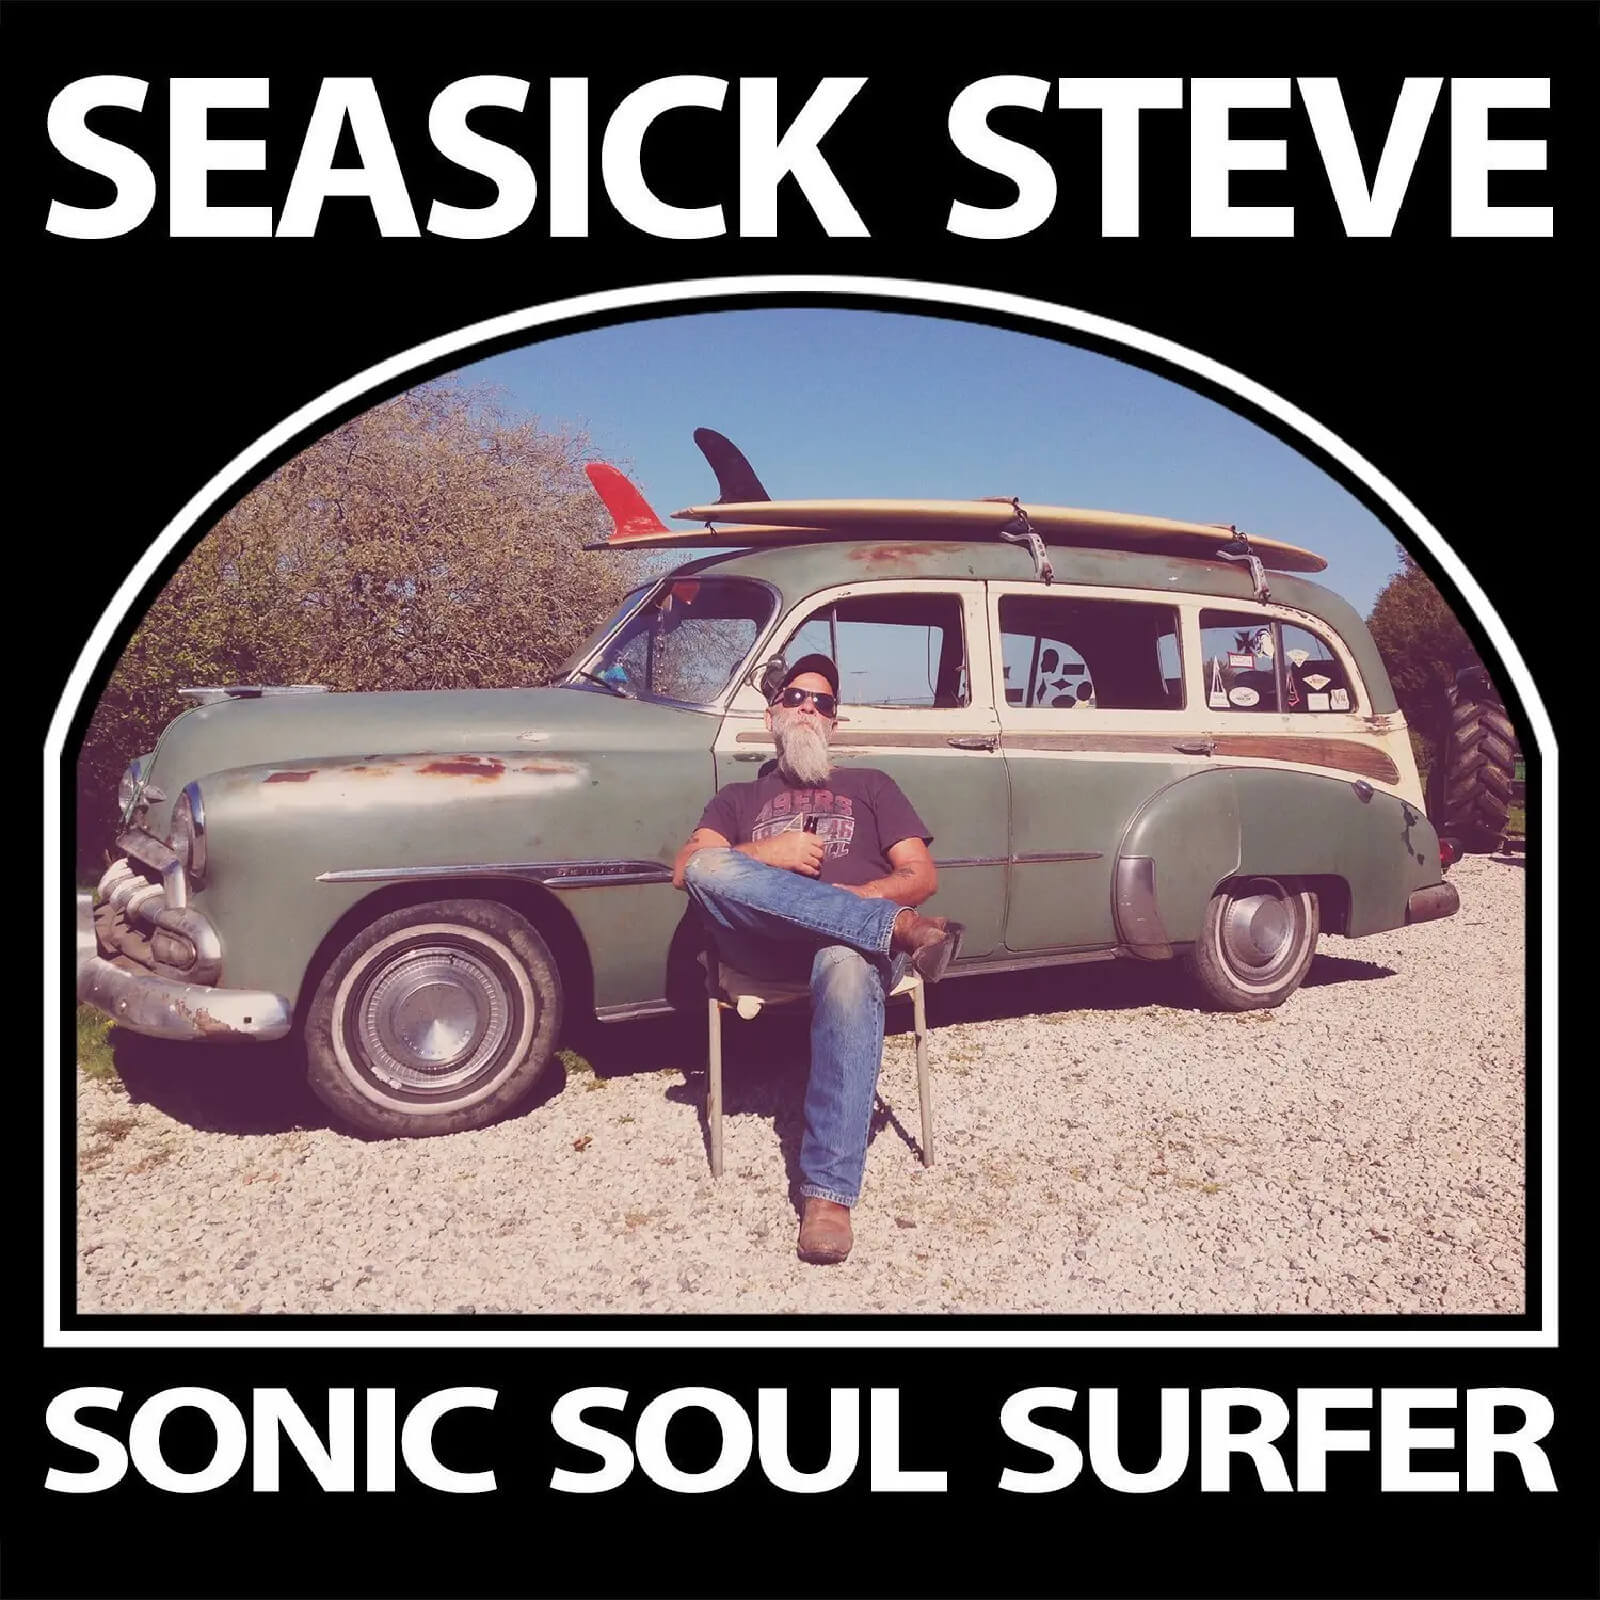 Seasick Steve - Sonic Soul Surfer Vinyl 2LP